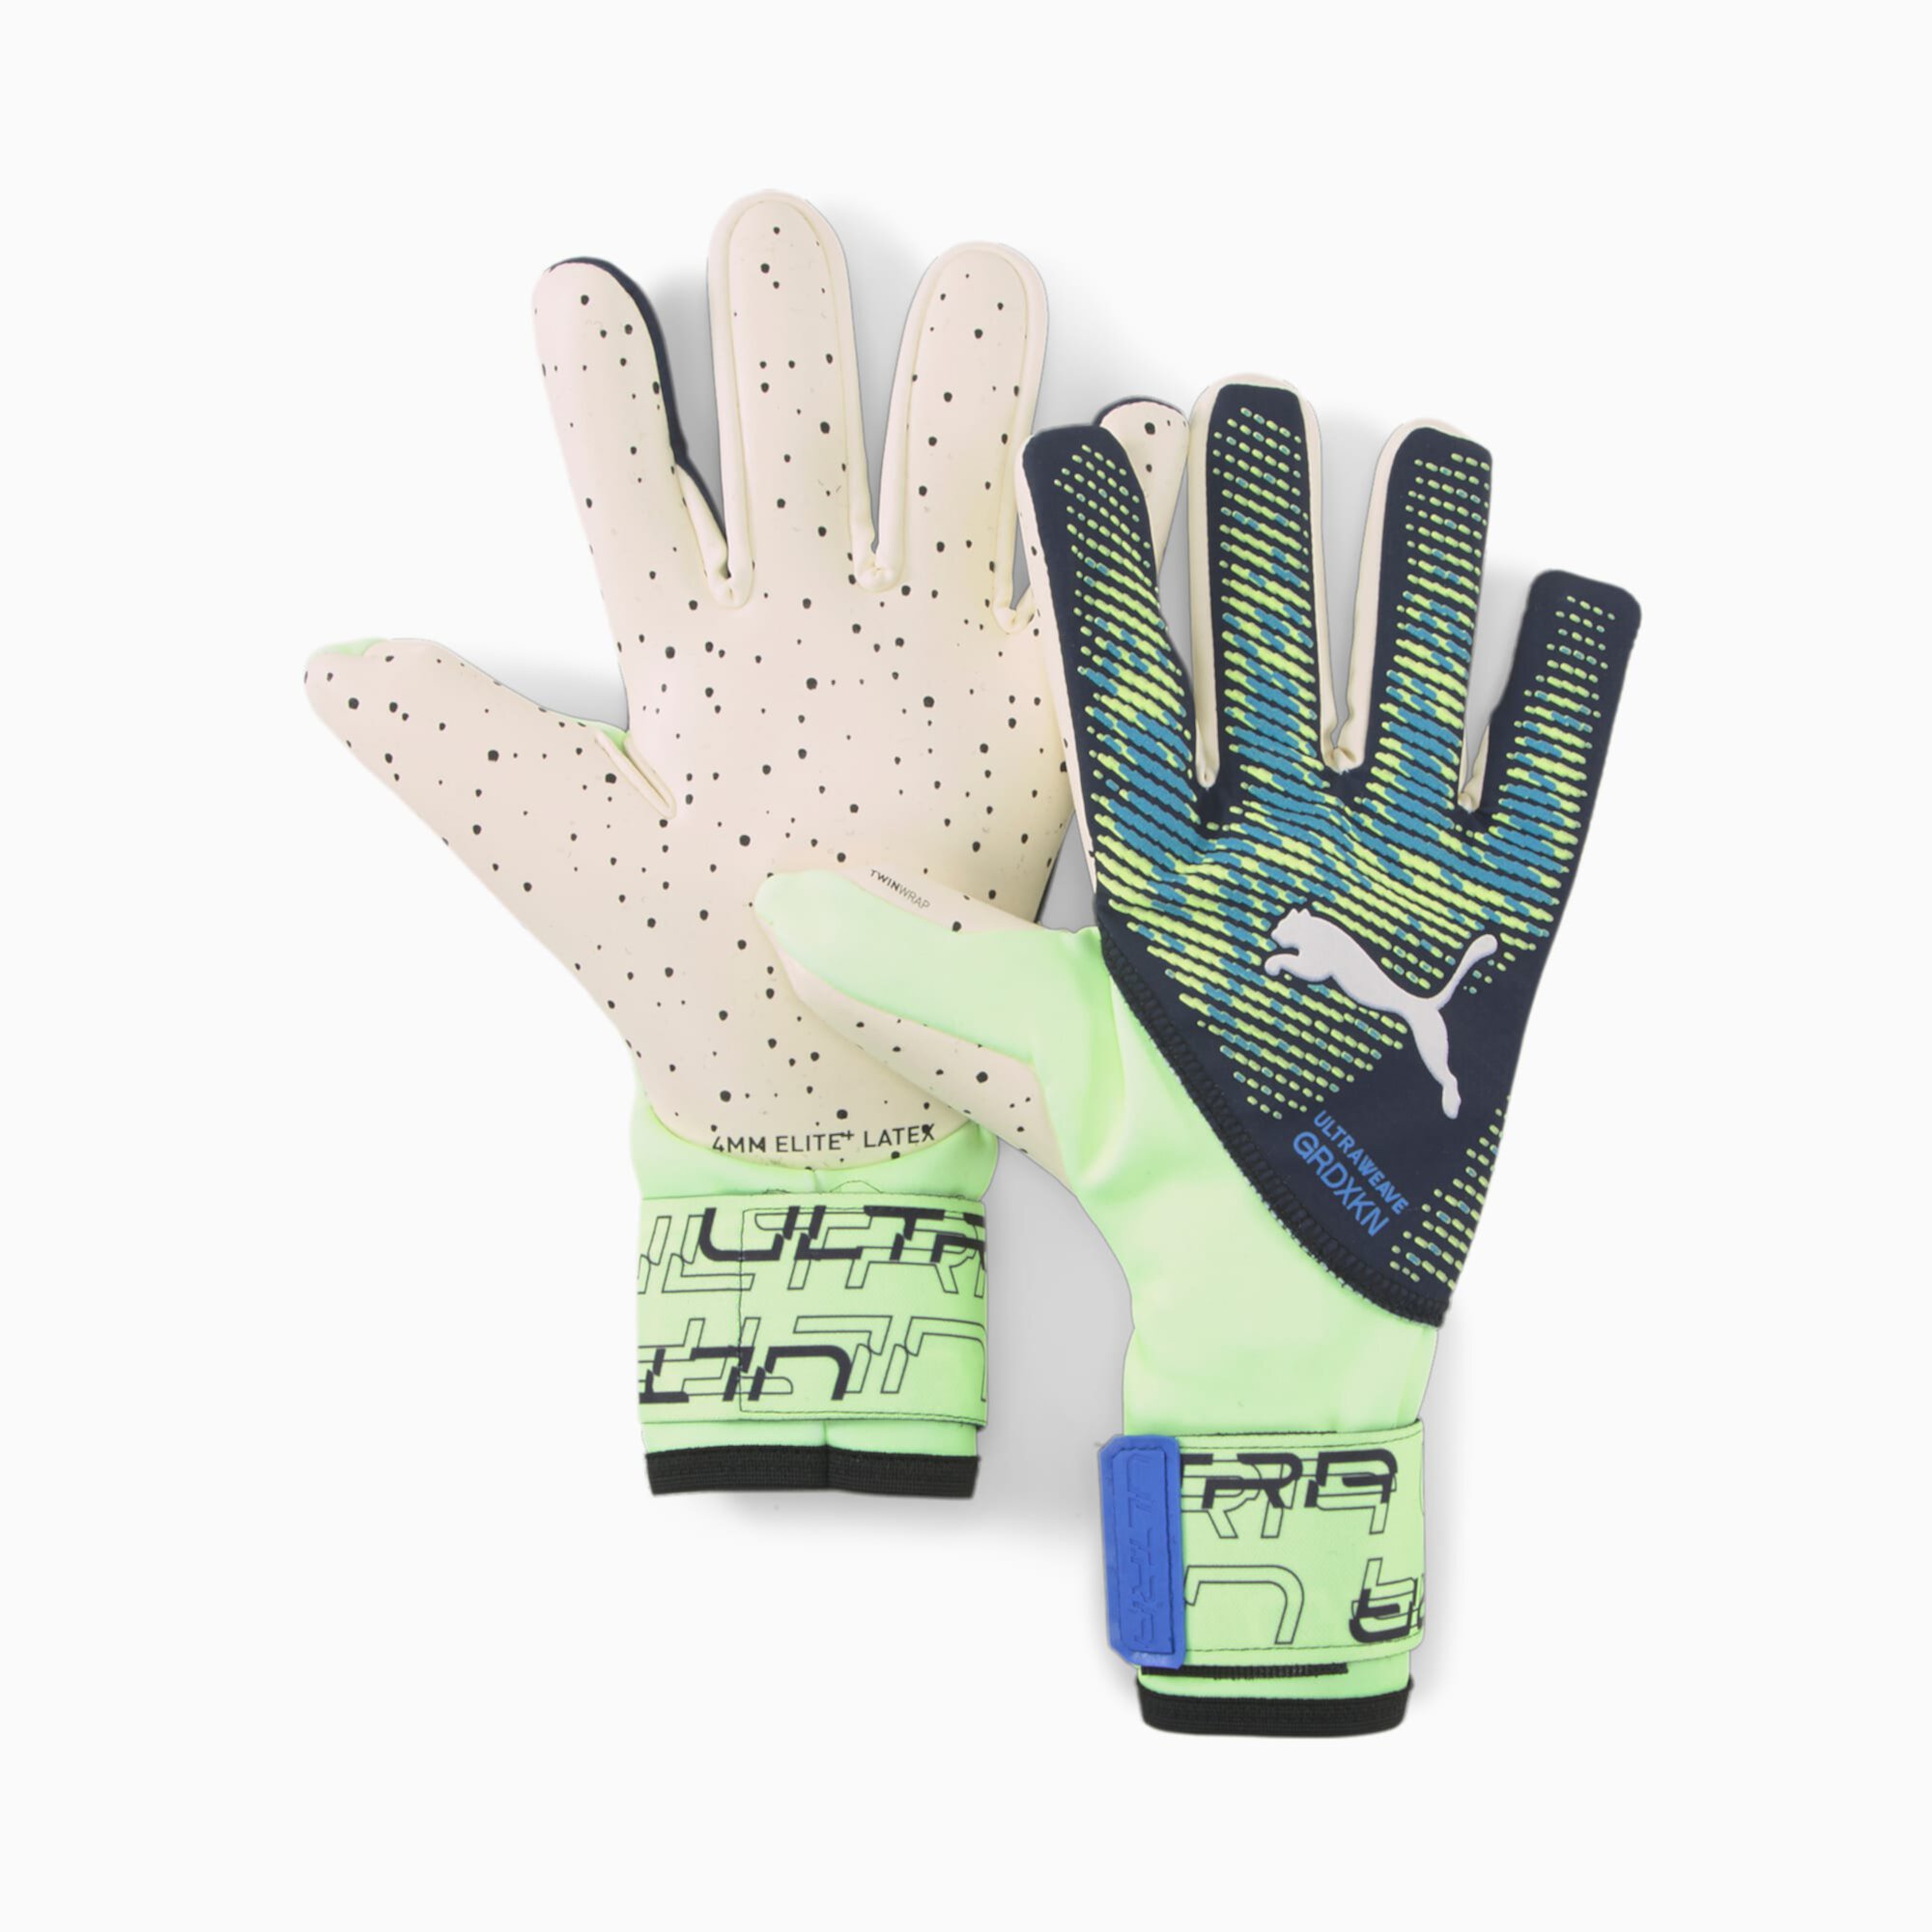 ULTRA Ultimate 1 Negative Cut Soccer Goalkeeper's Gloves PUMA